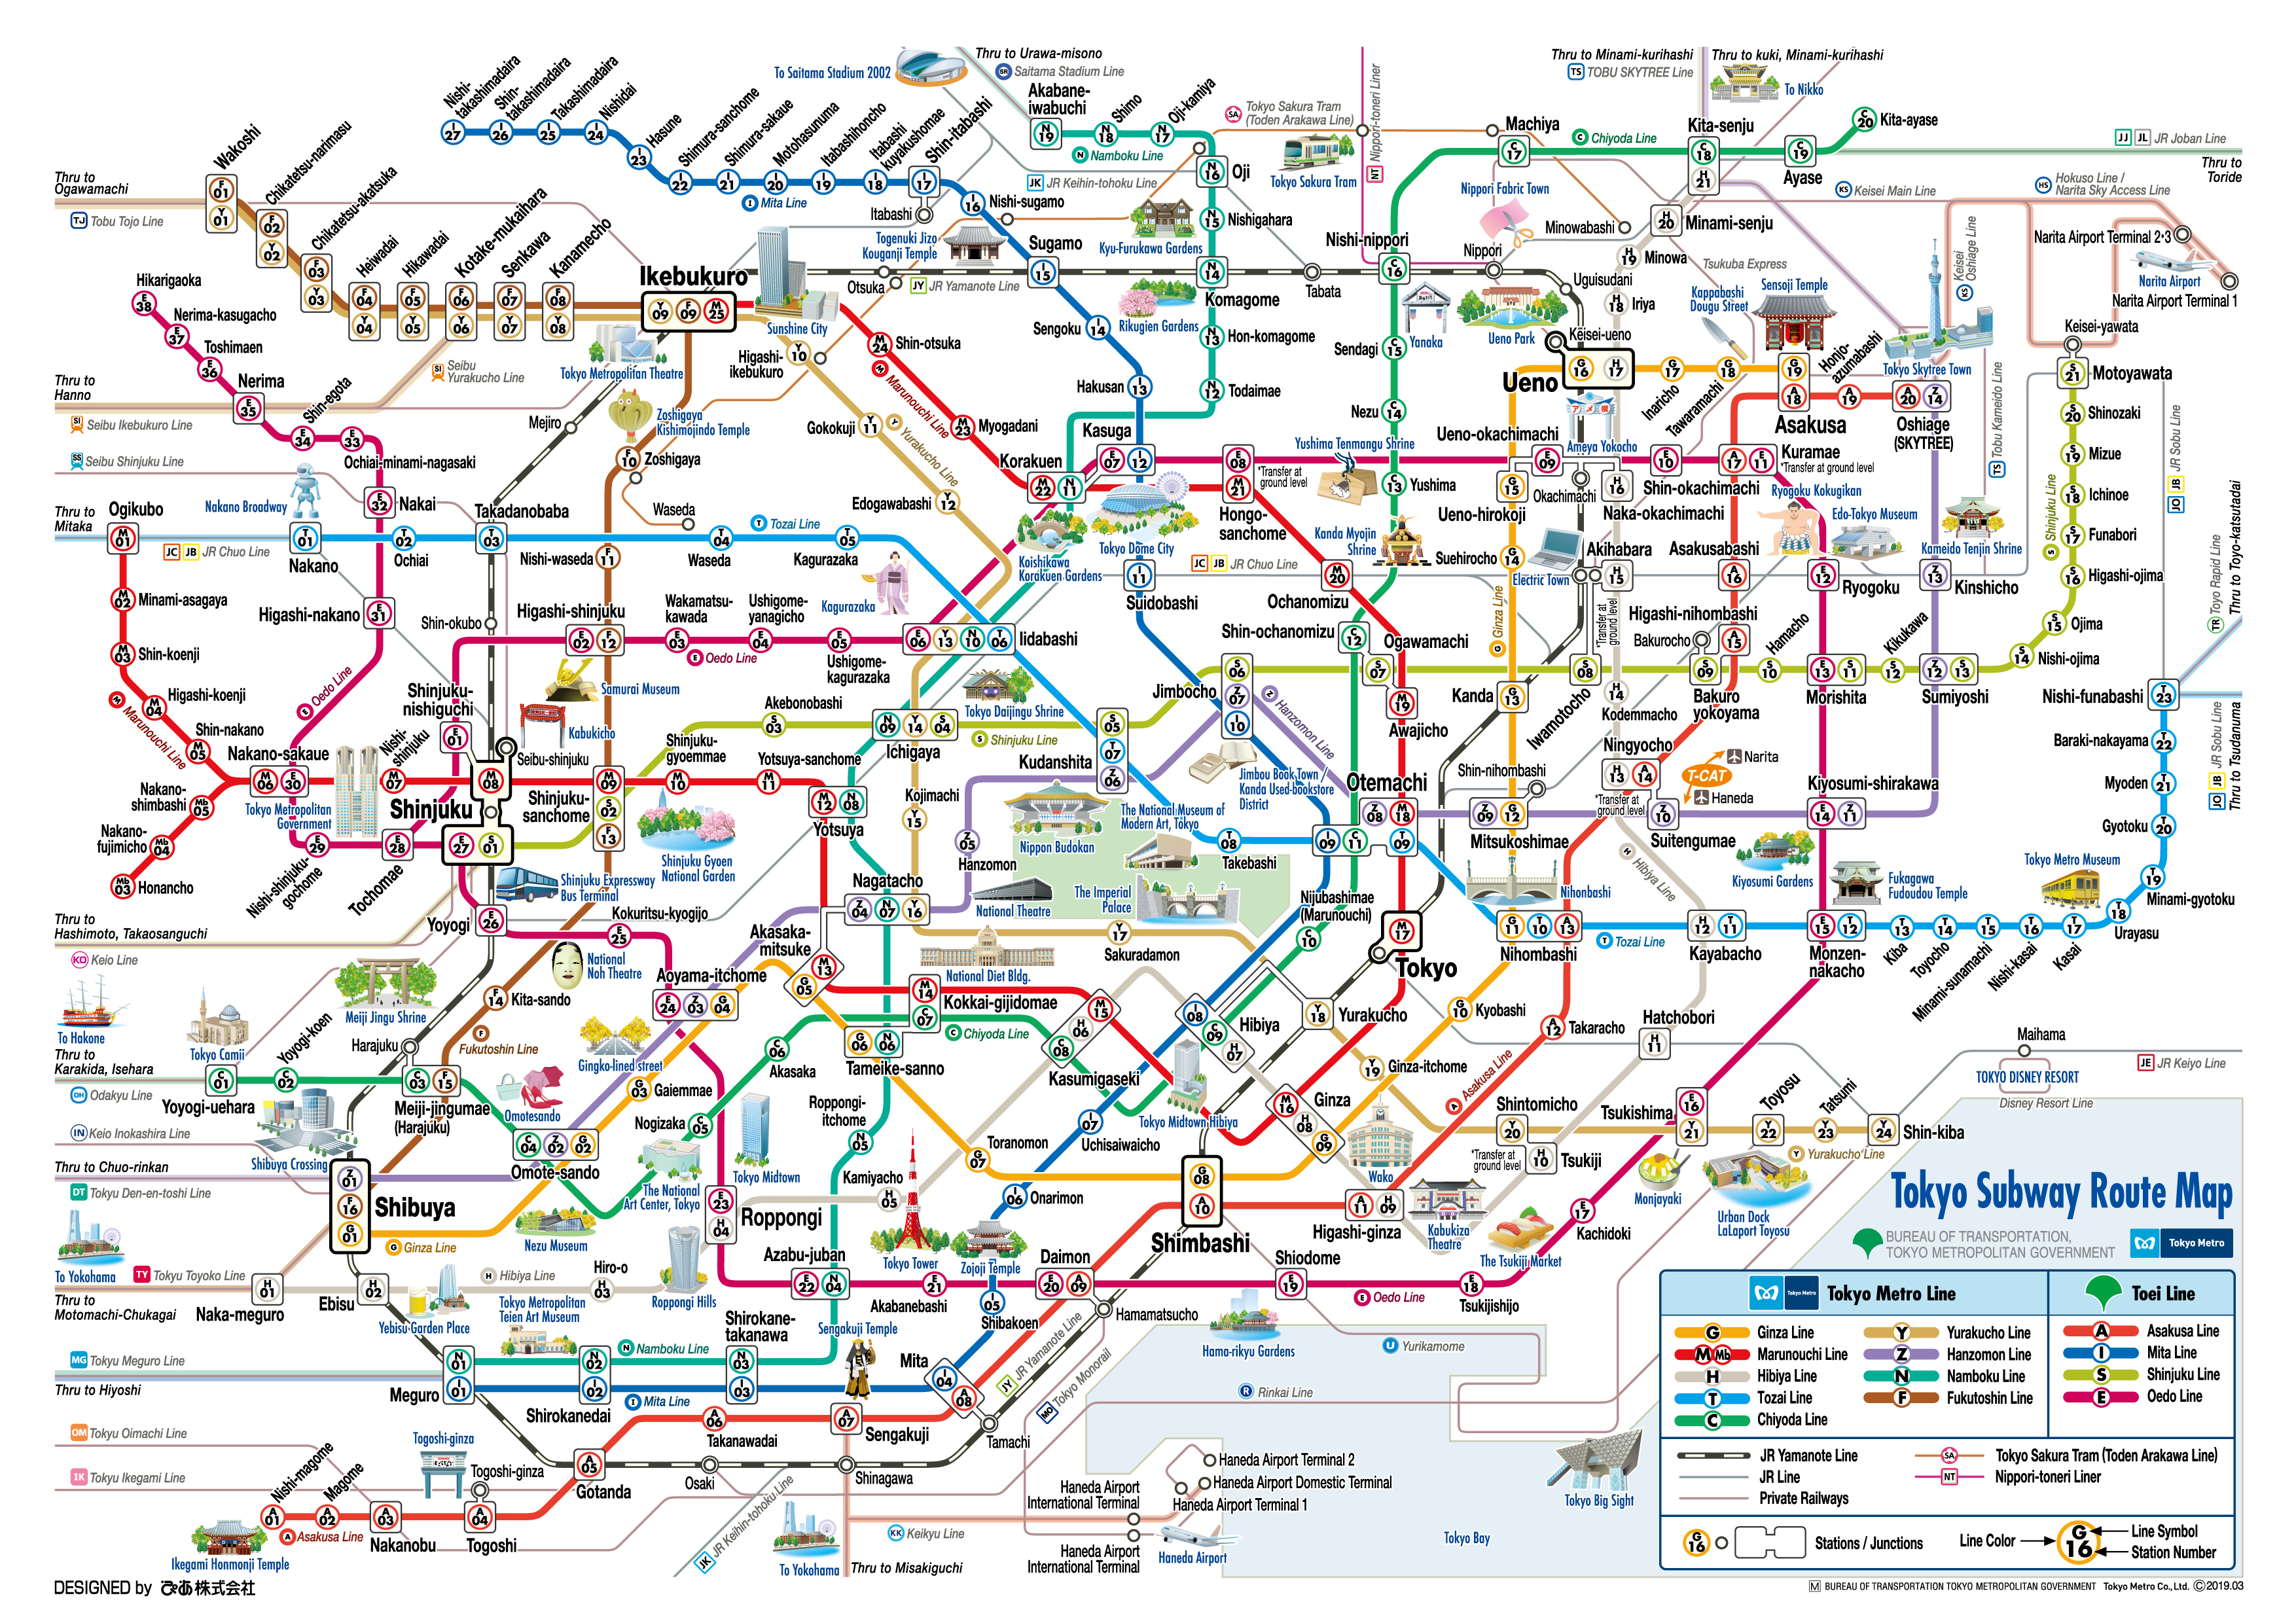 Tokyo Tower Main Deck Admission Ticket & Tokyo Subway 24-hour Ticket